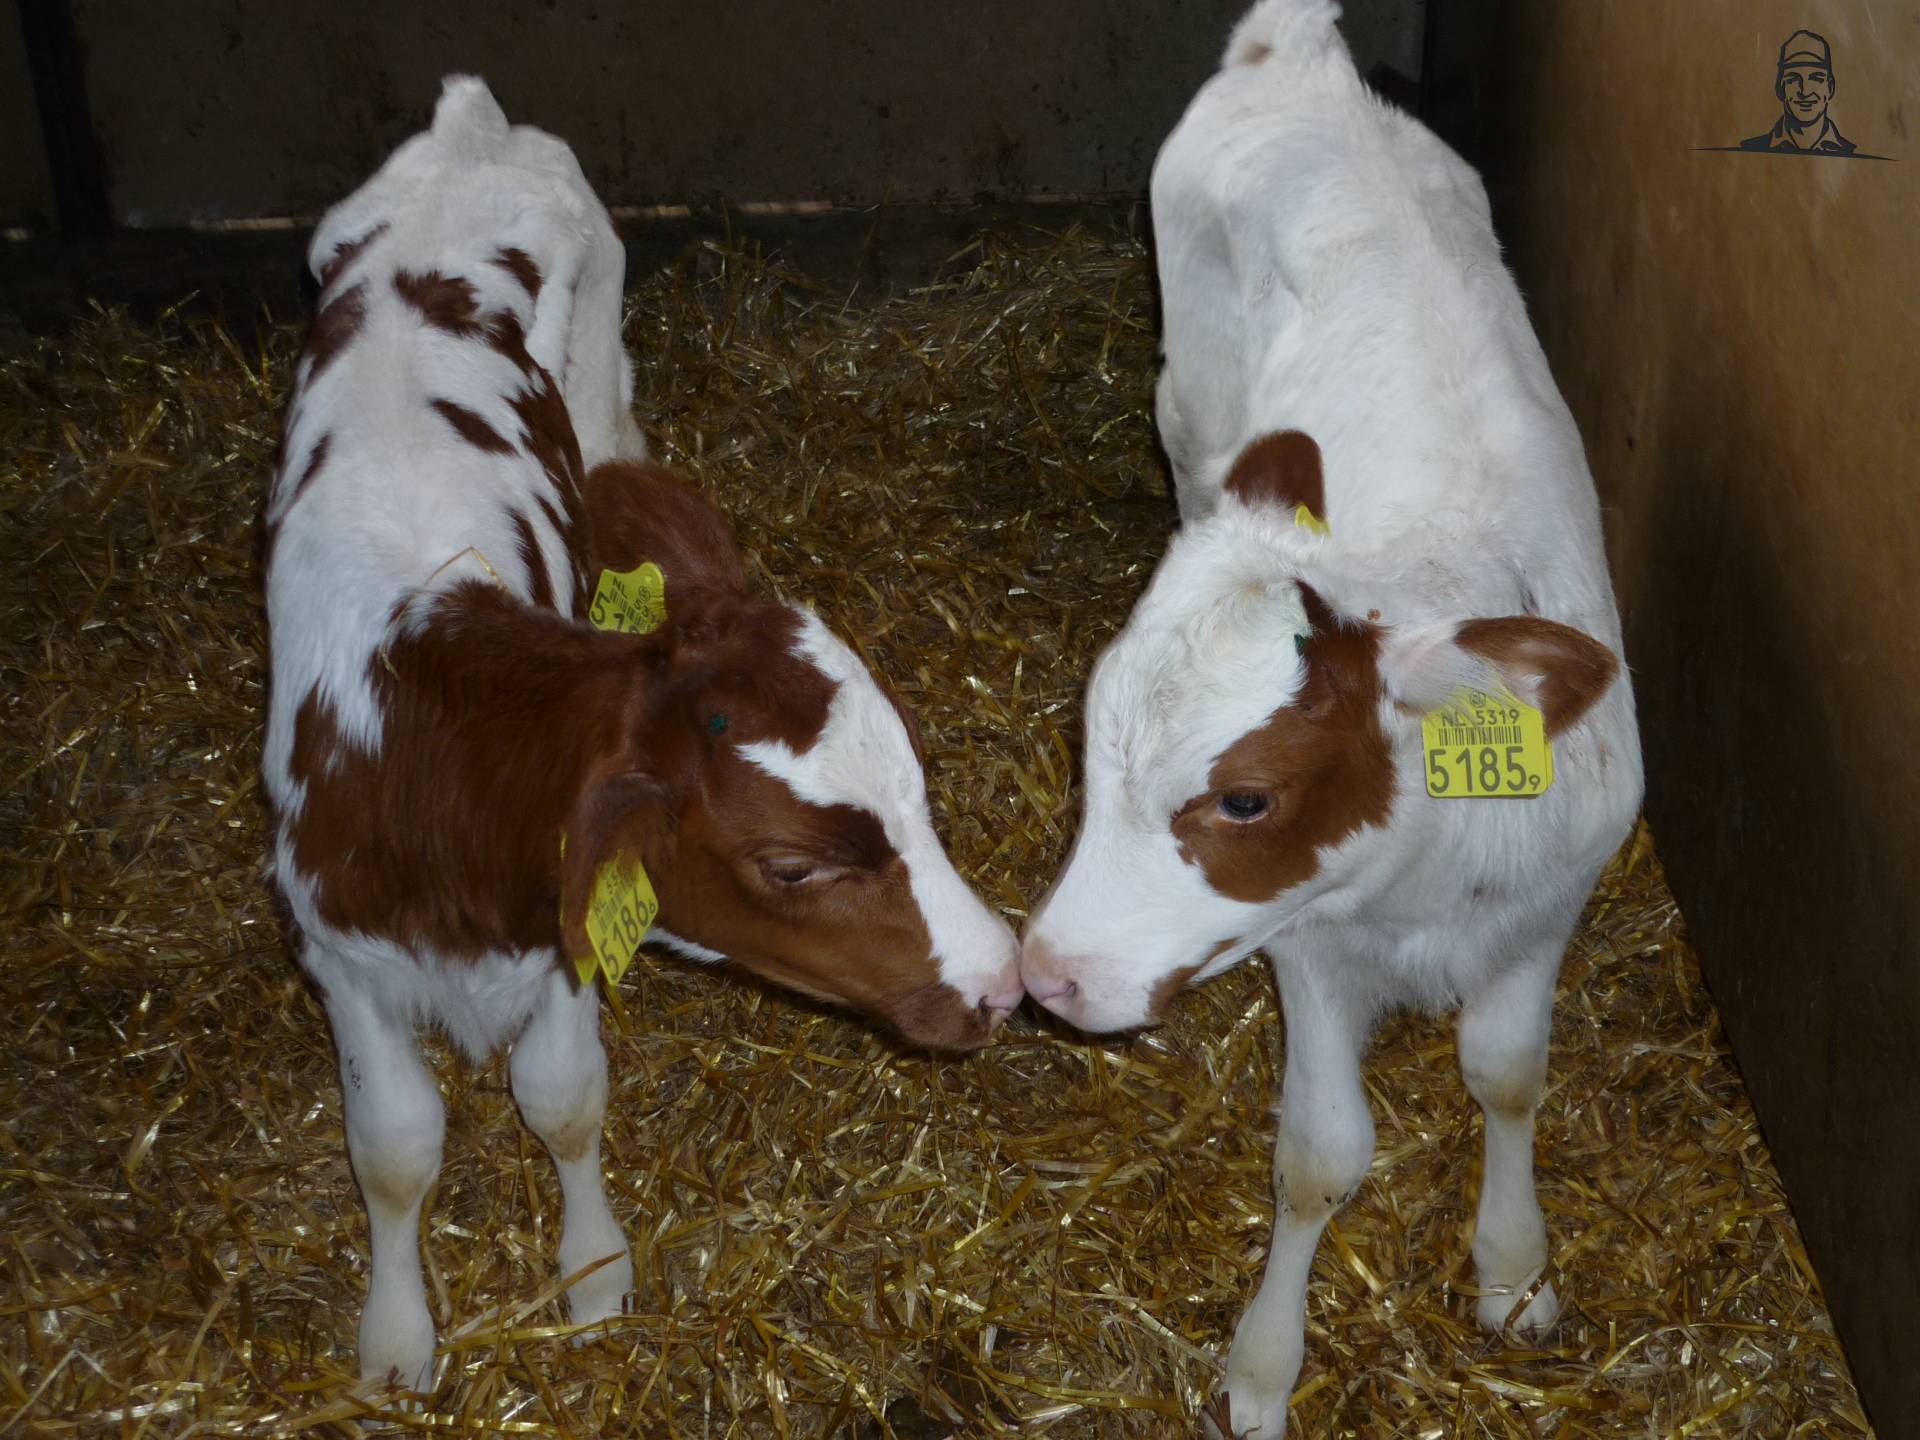 Tweeling dochters van onze 100.000 liter koe van Fendt-tom